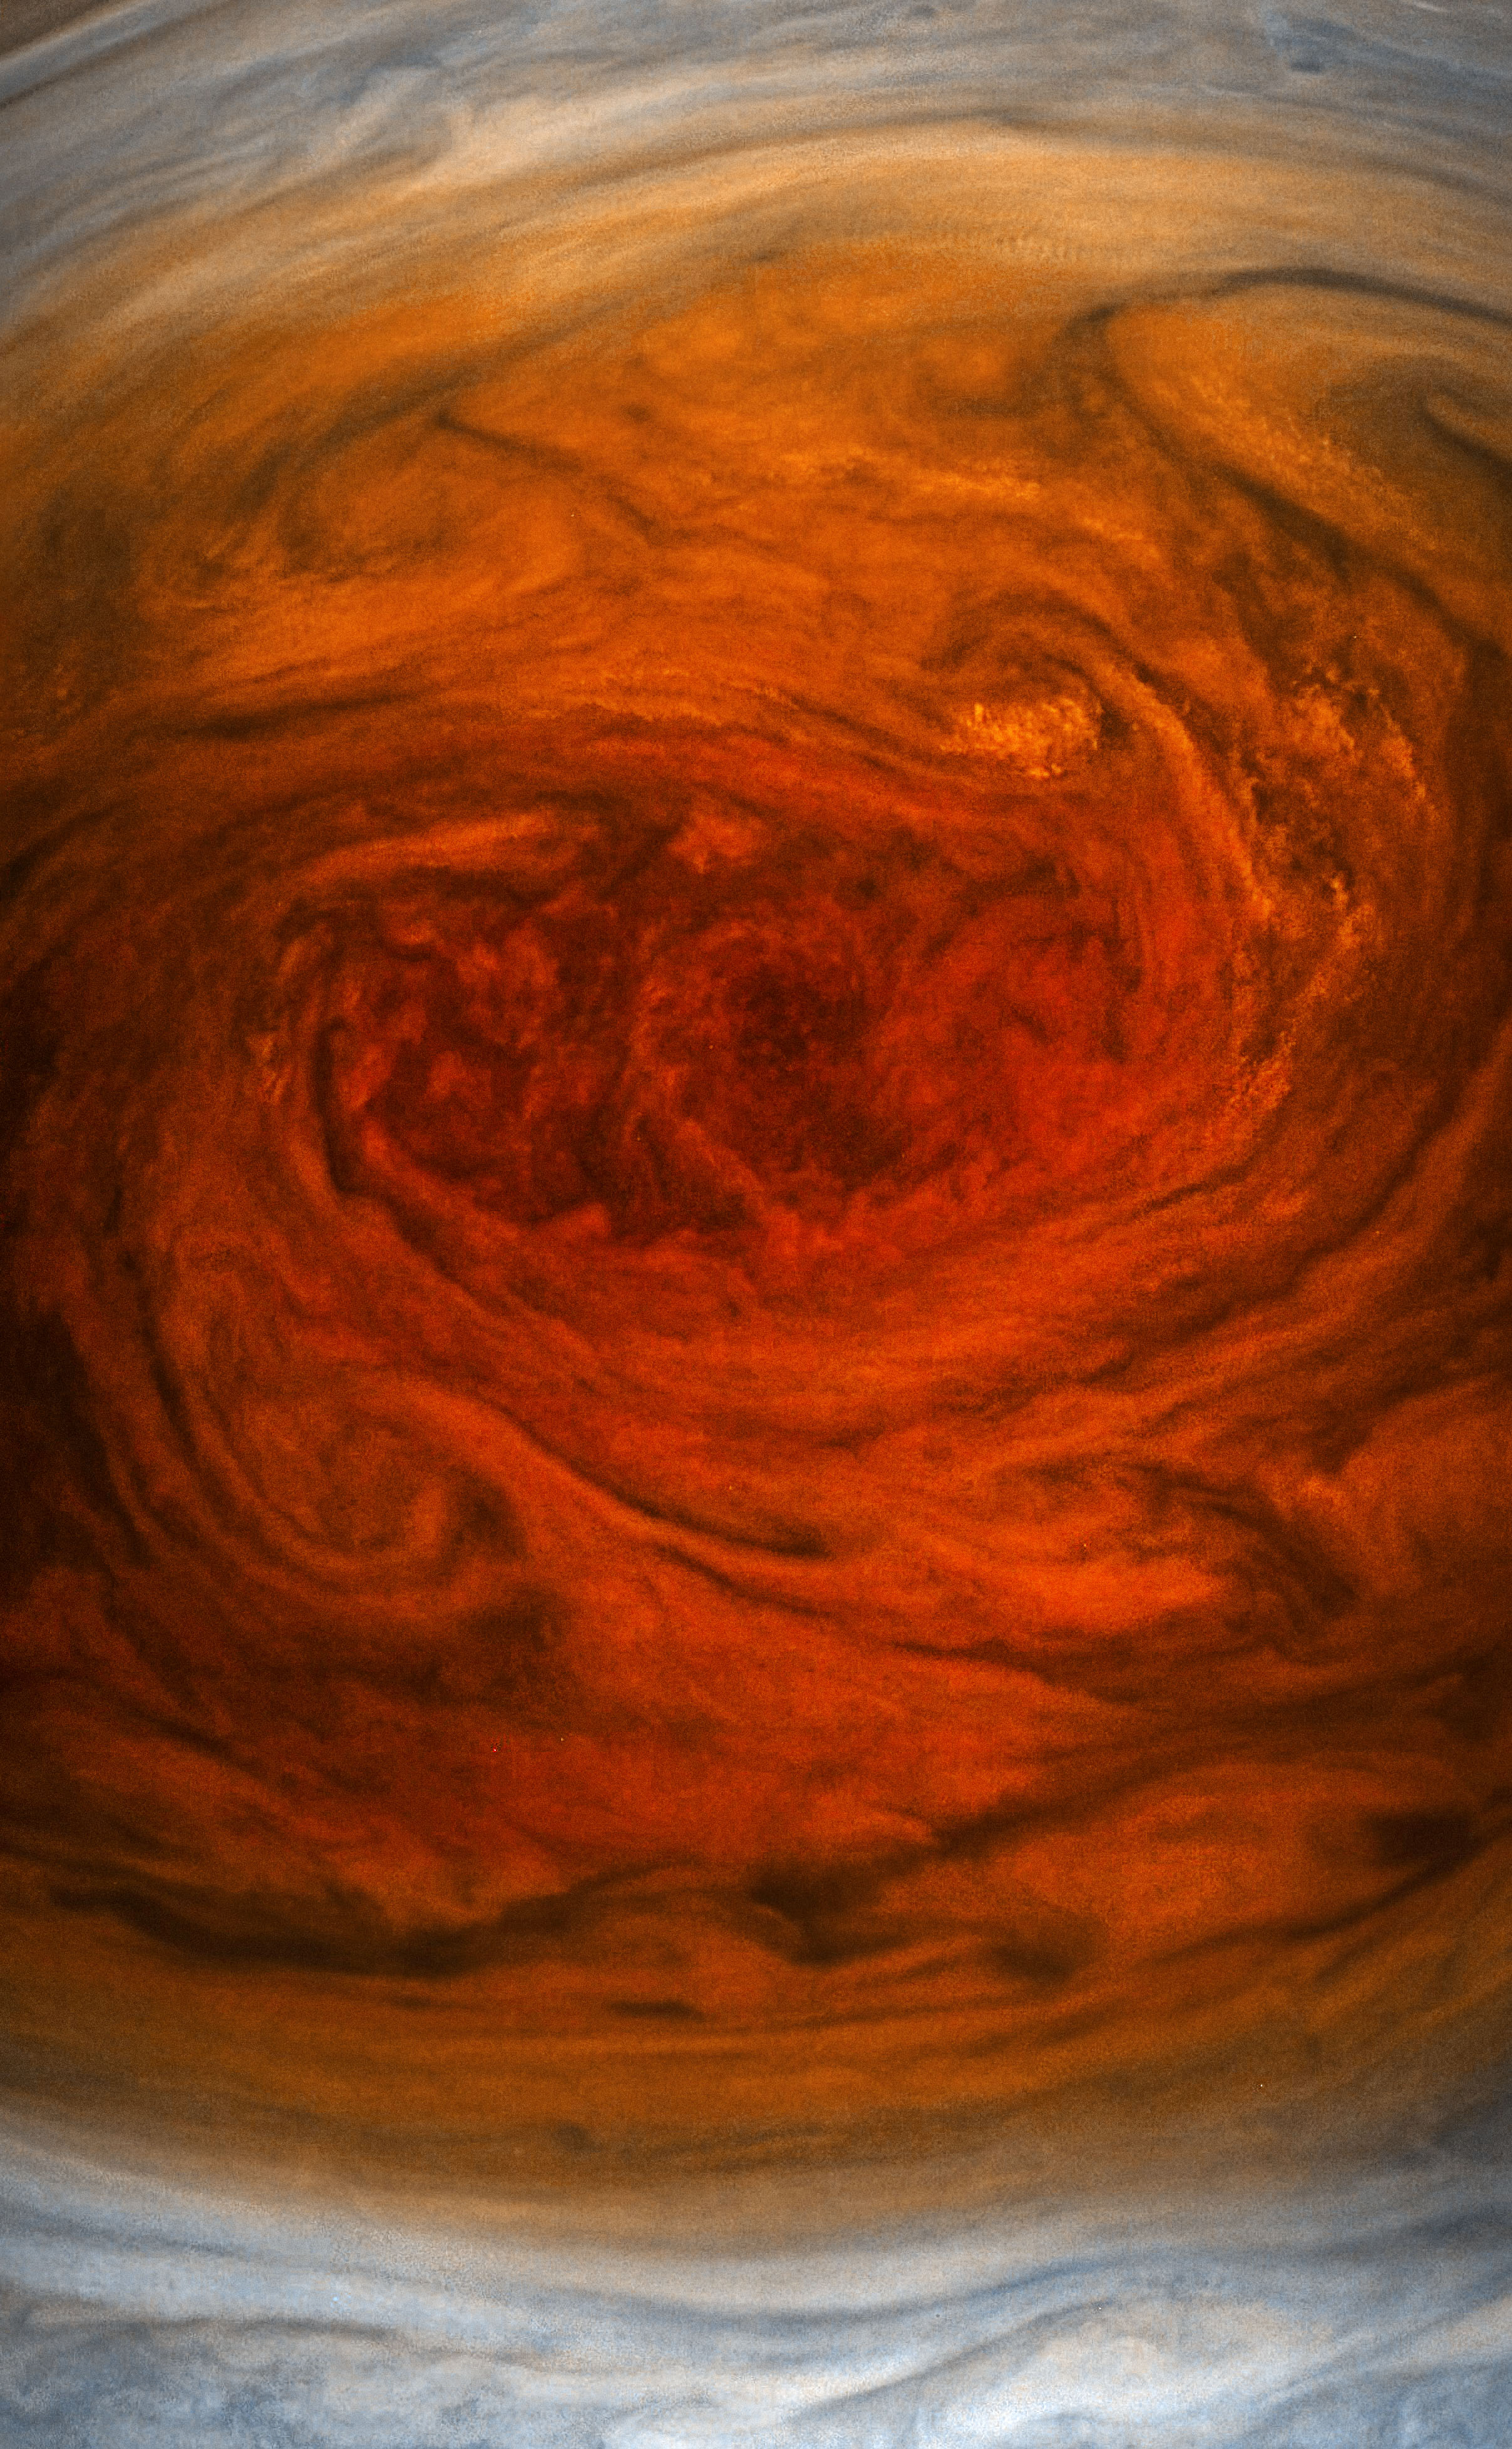 Great Red Spot, Jupiter